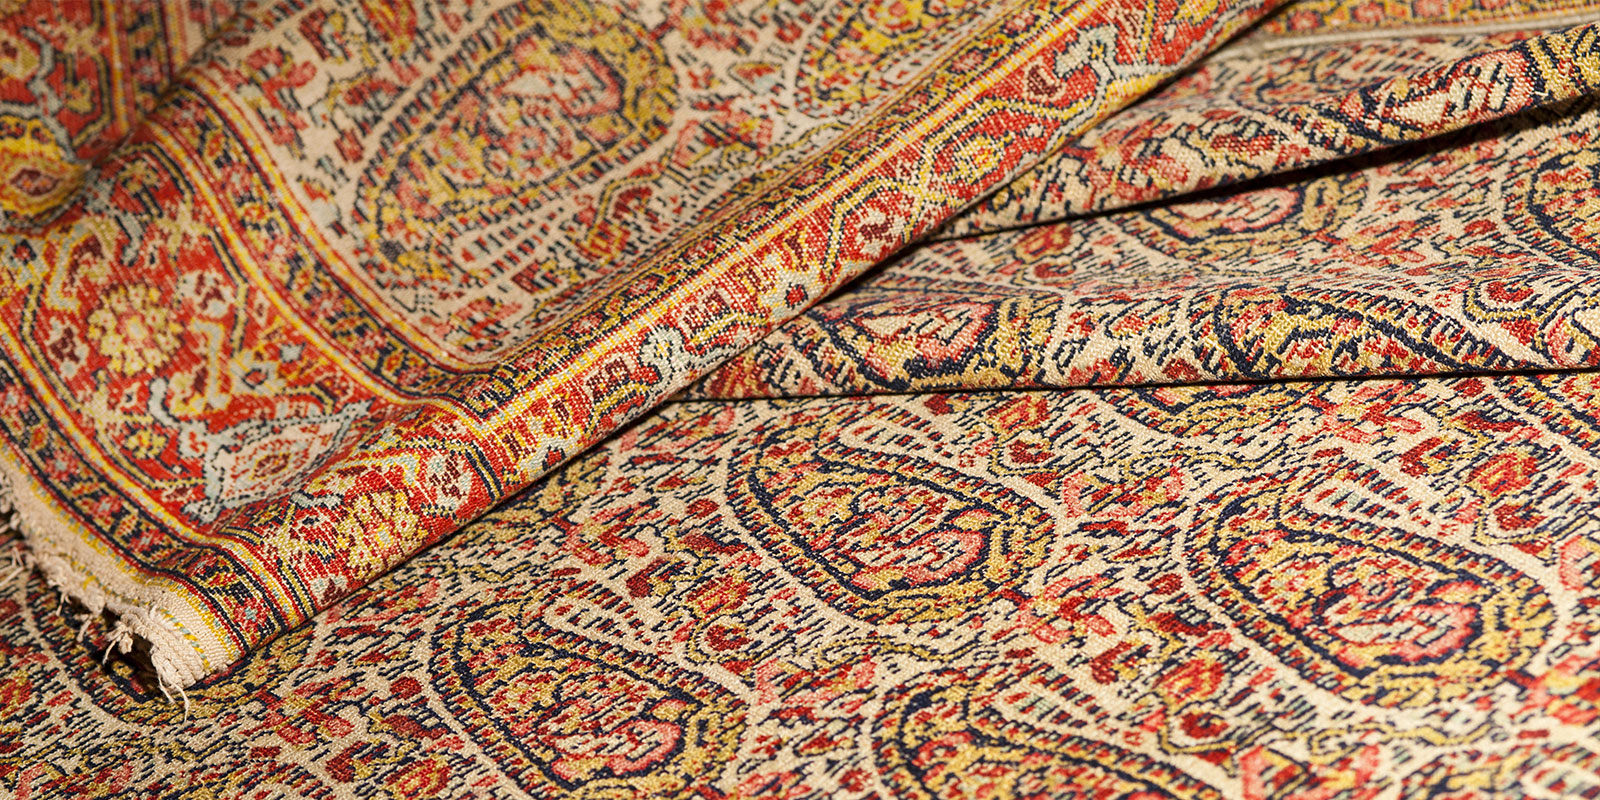 Lavaggio tappeti persiani